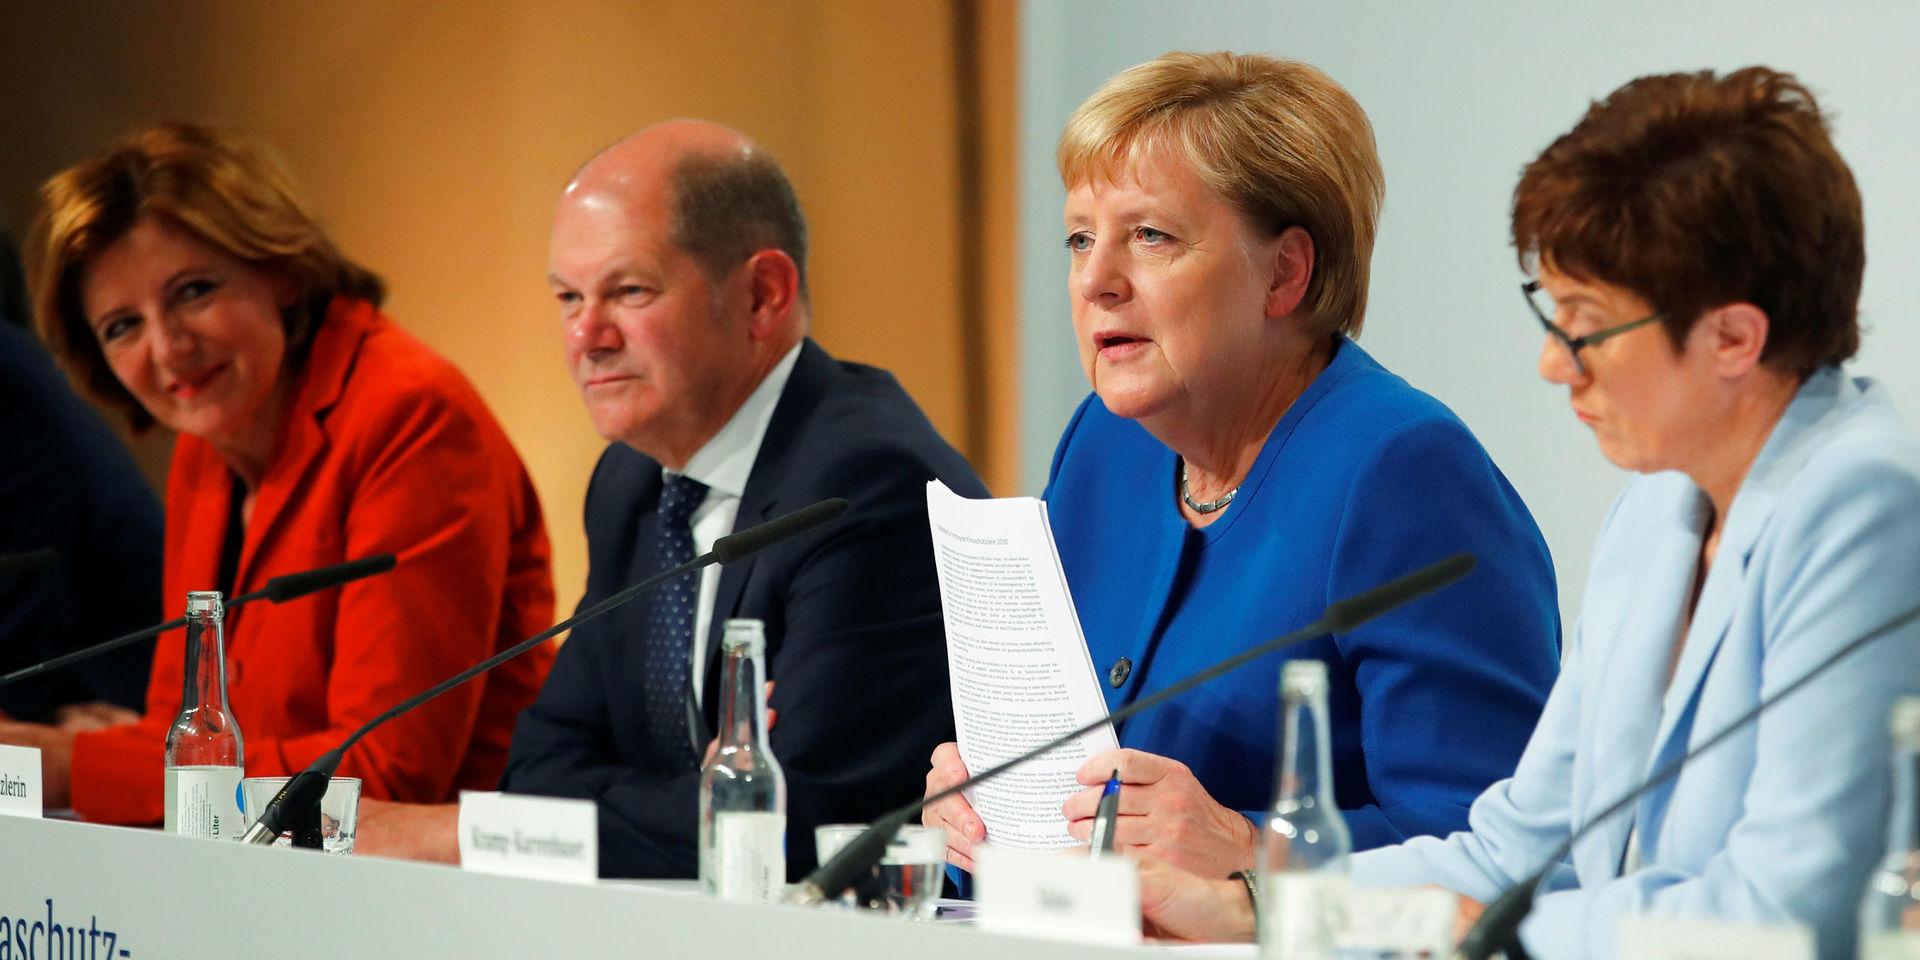 Tysklands förbundskansler Angela Merkel, CDU:s partiordförande Annegret Kramp-Karrenbauer, finansminister Olaf Scholz och socialdemokraternas interrimledare Malu Dreyer presenterar tyska miljösatsningar på en presskonferens i Berlin på fredagen.